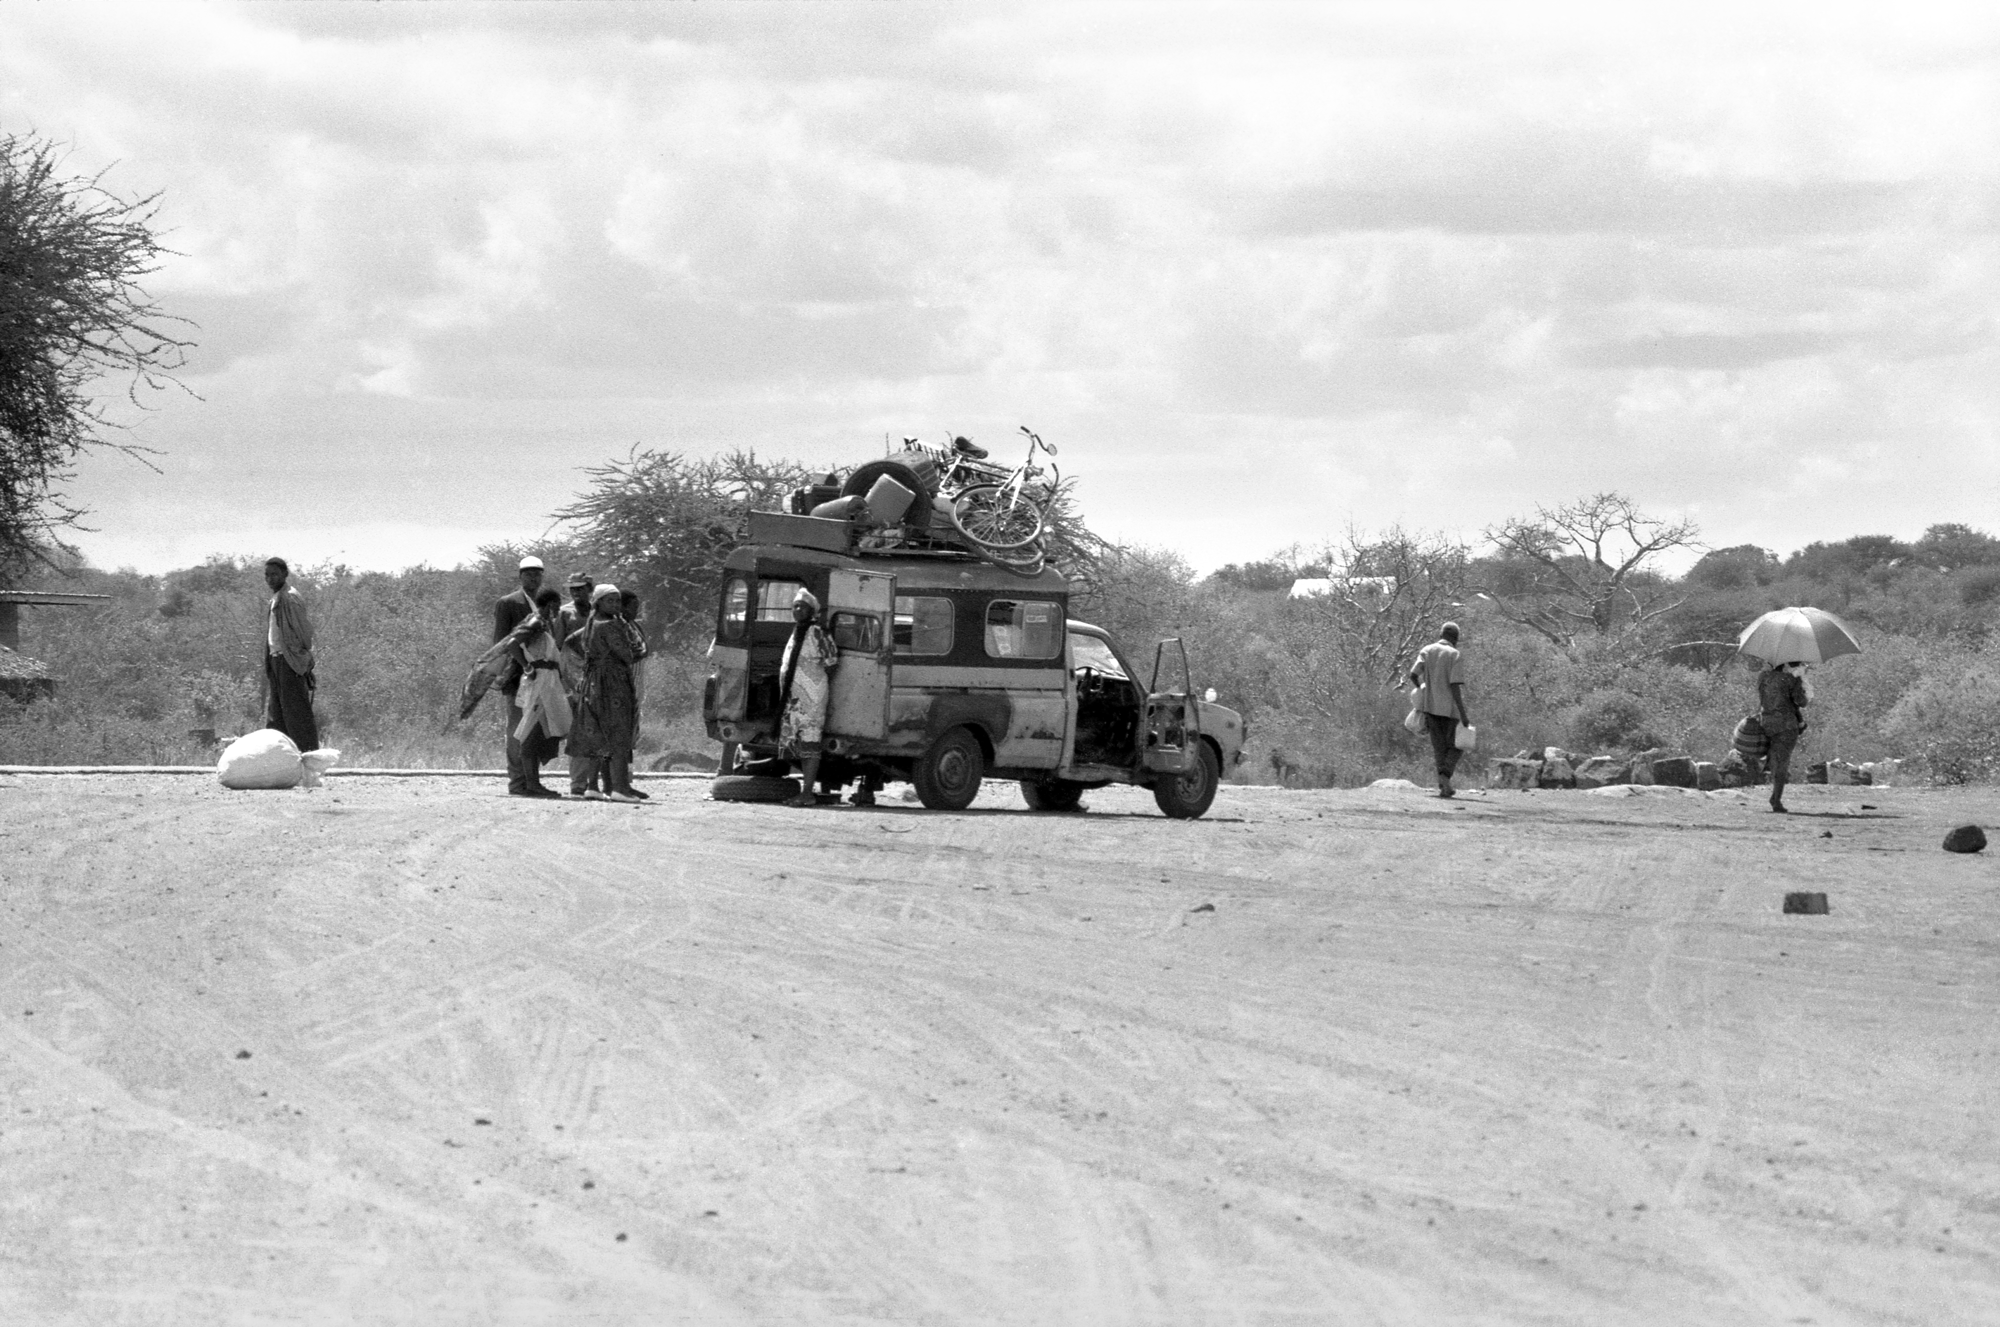 Matatu with a puncture, Kenya